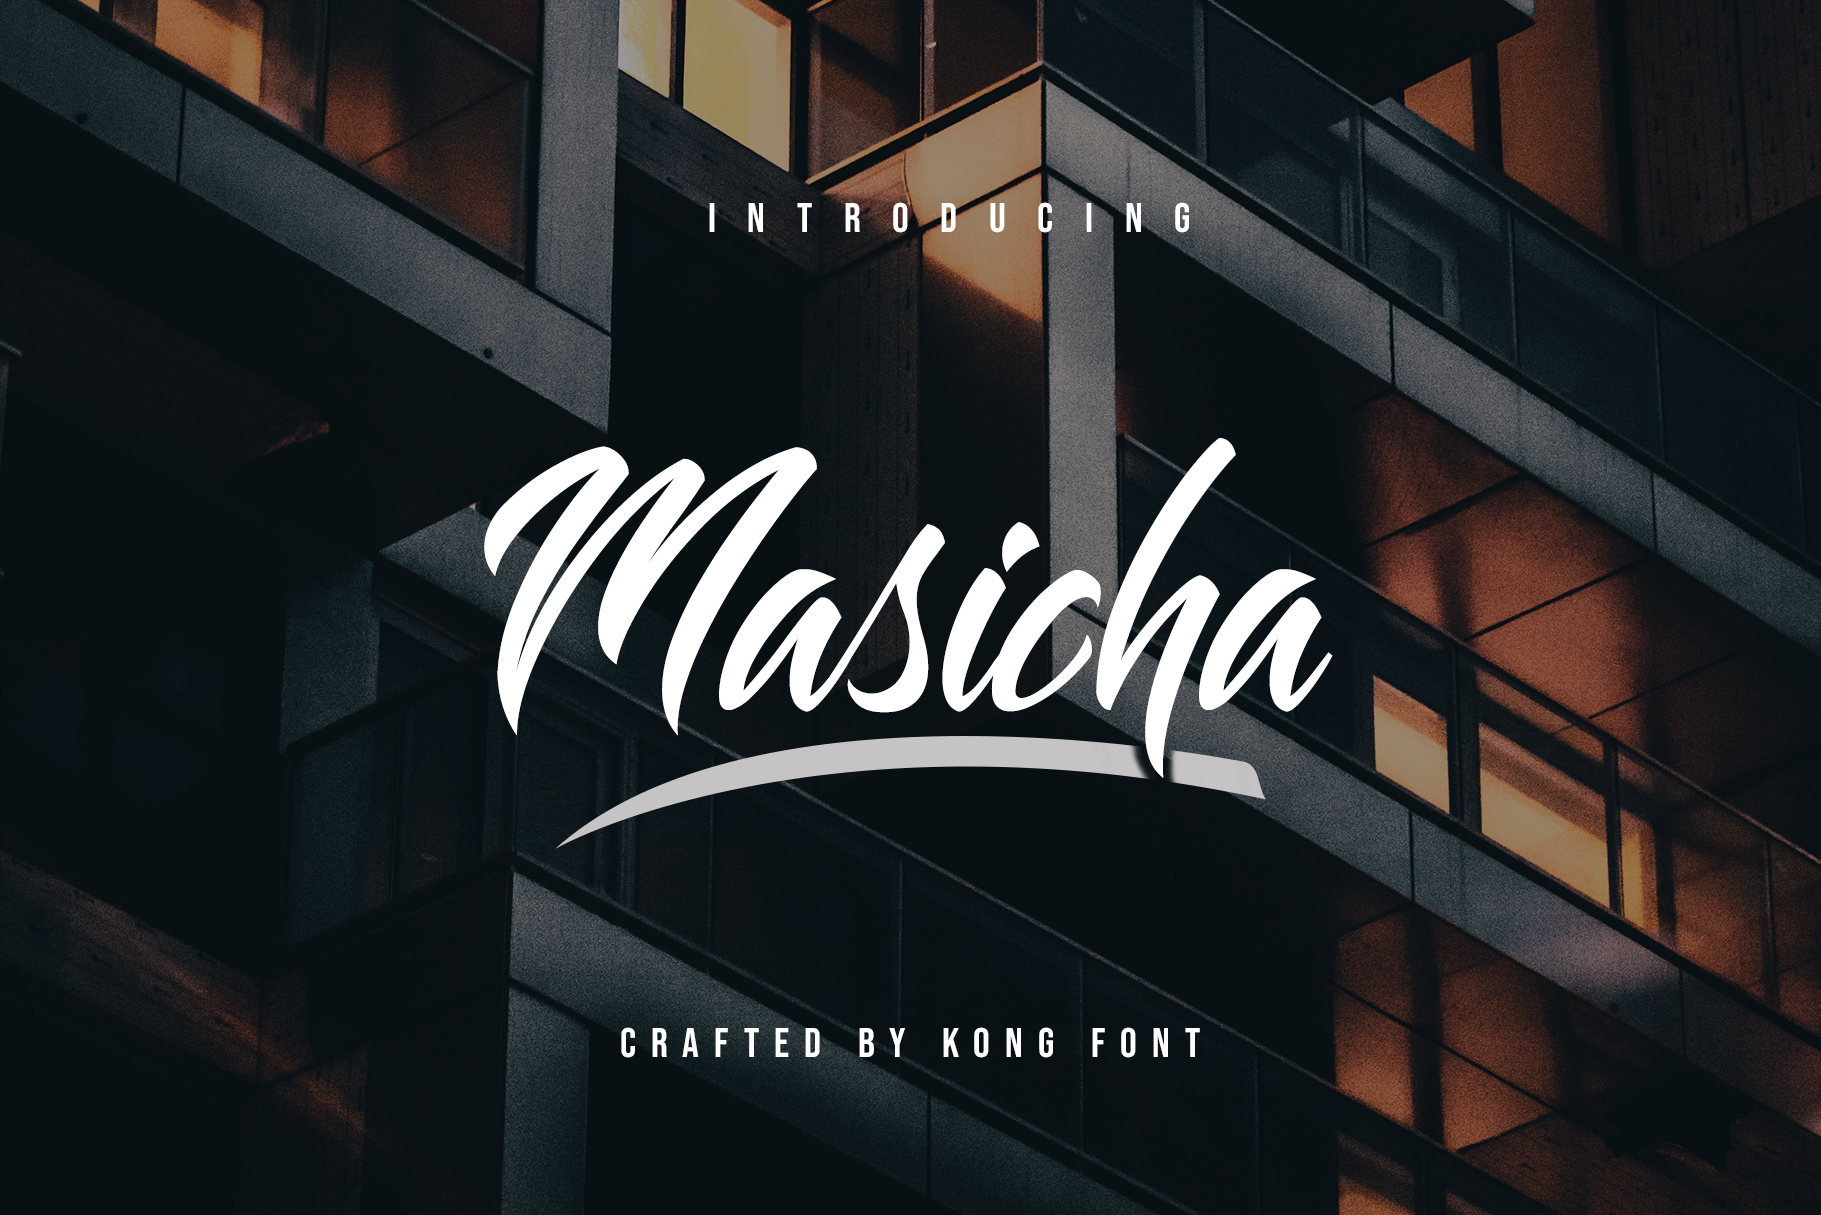 Masicha